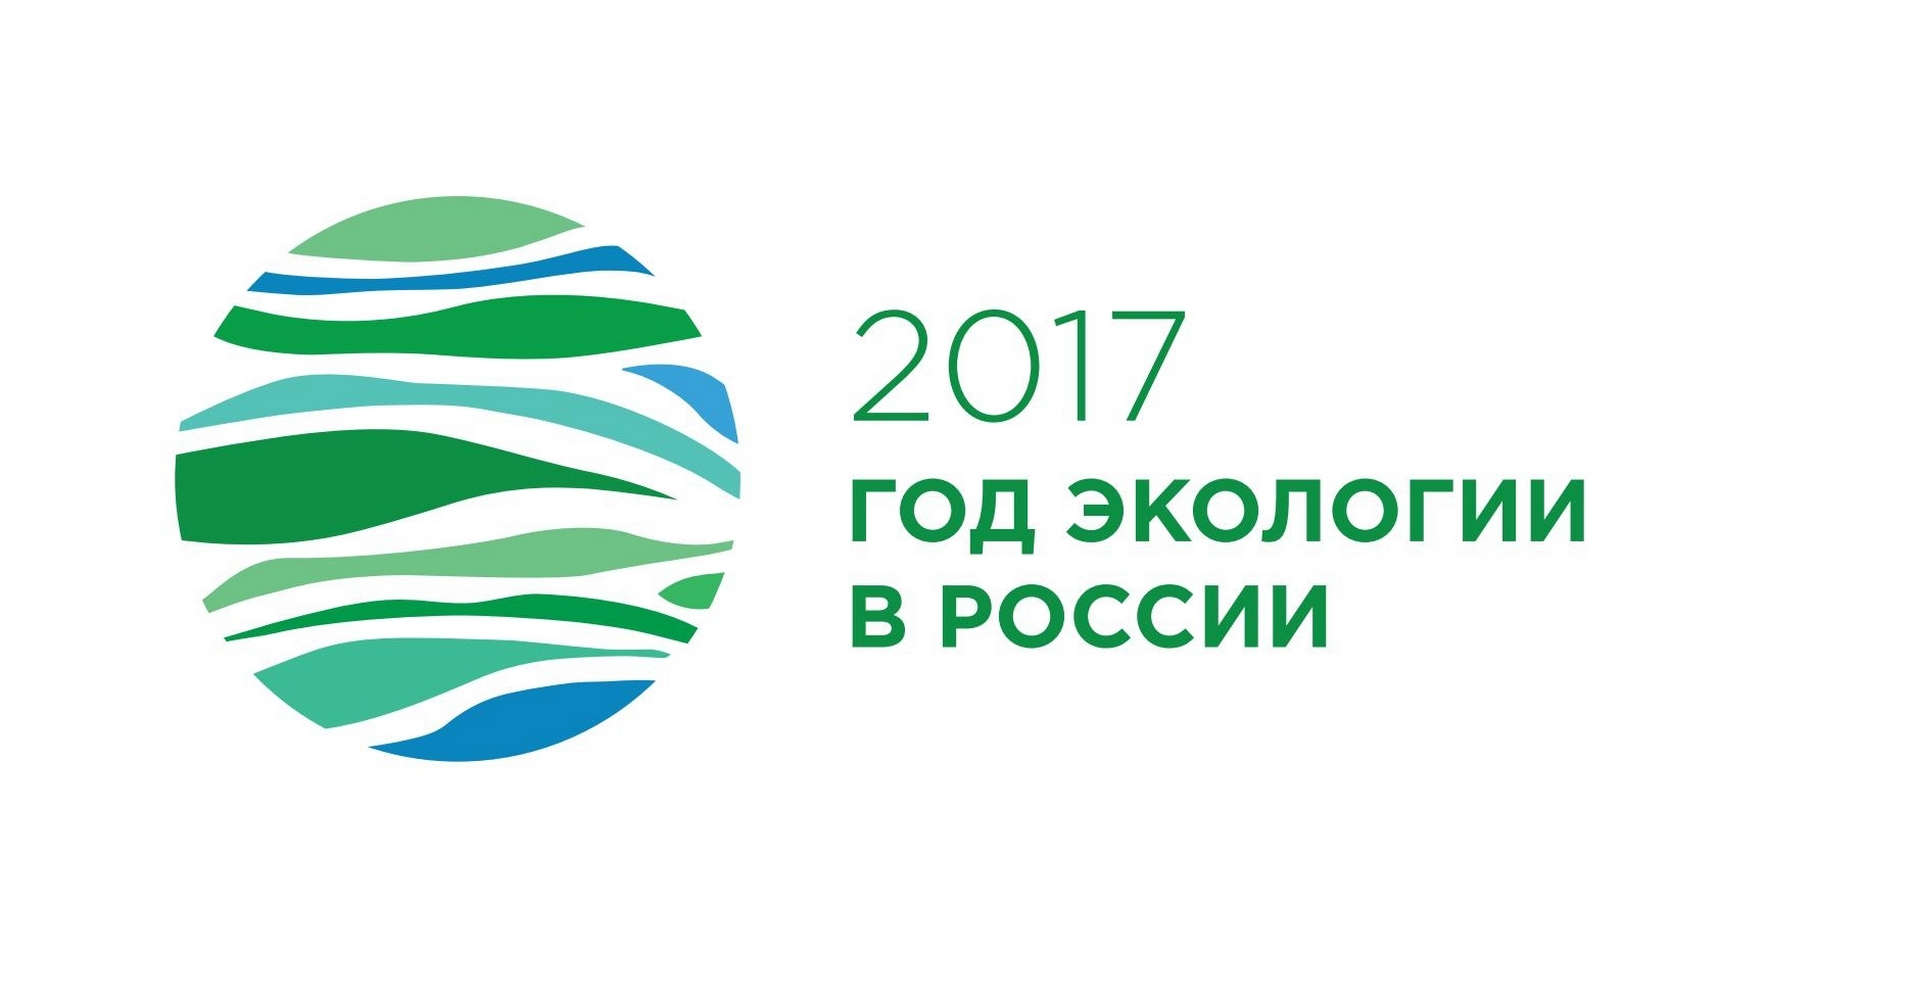 логотип года экологии